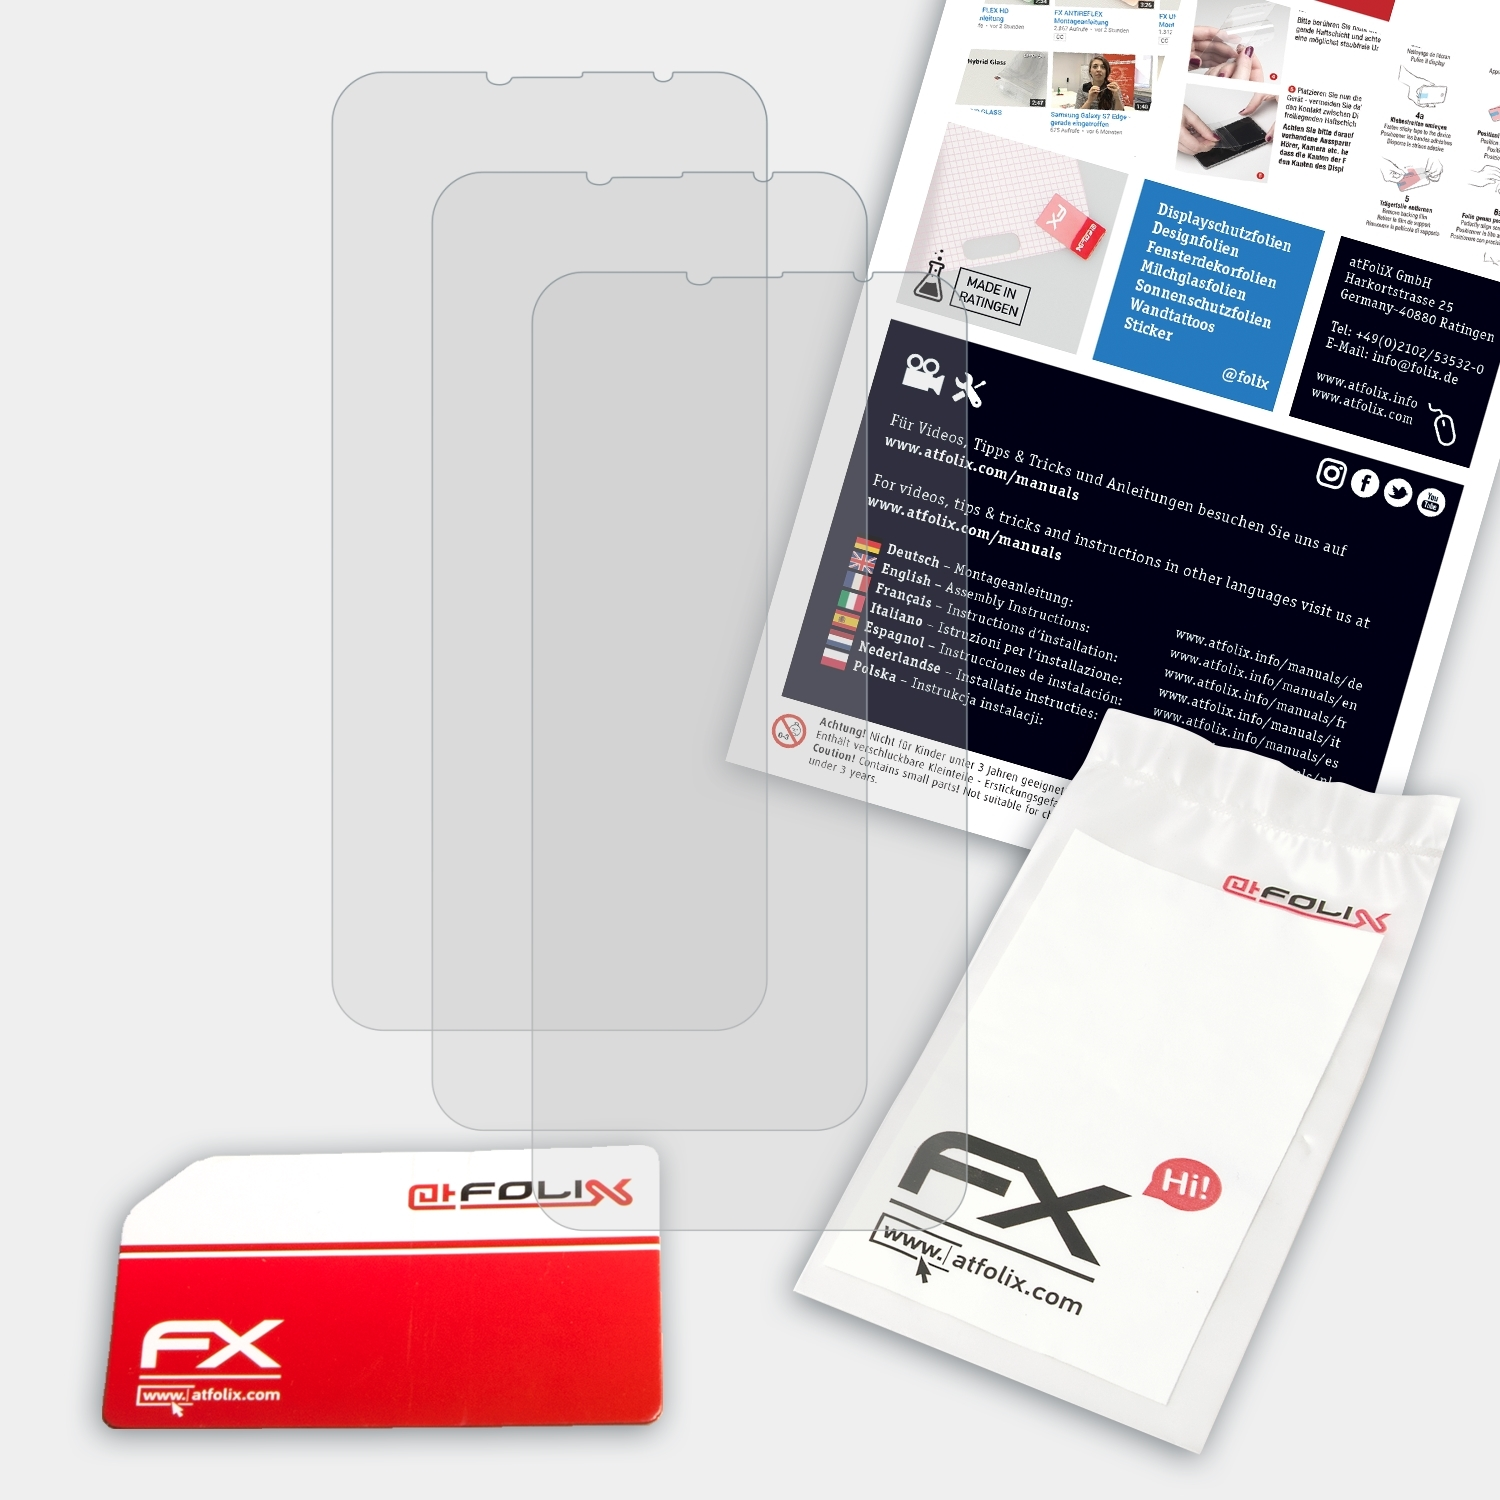 ATFOLIX 3x M9 Displayschutz(für Pro) Leagoo FX-Antireflex